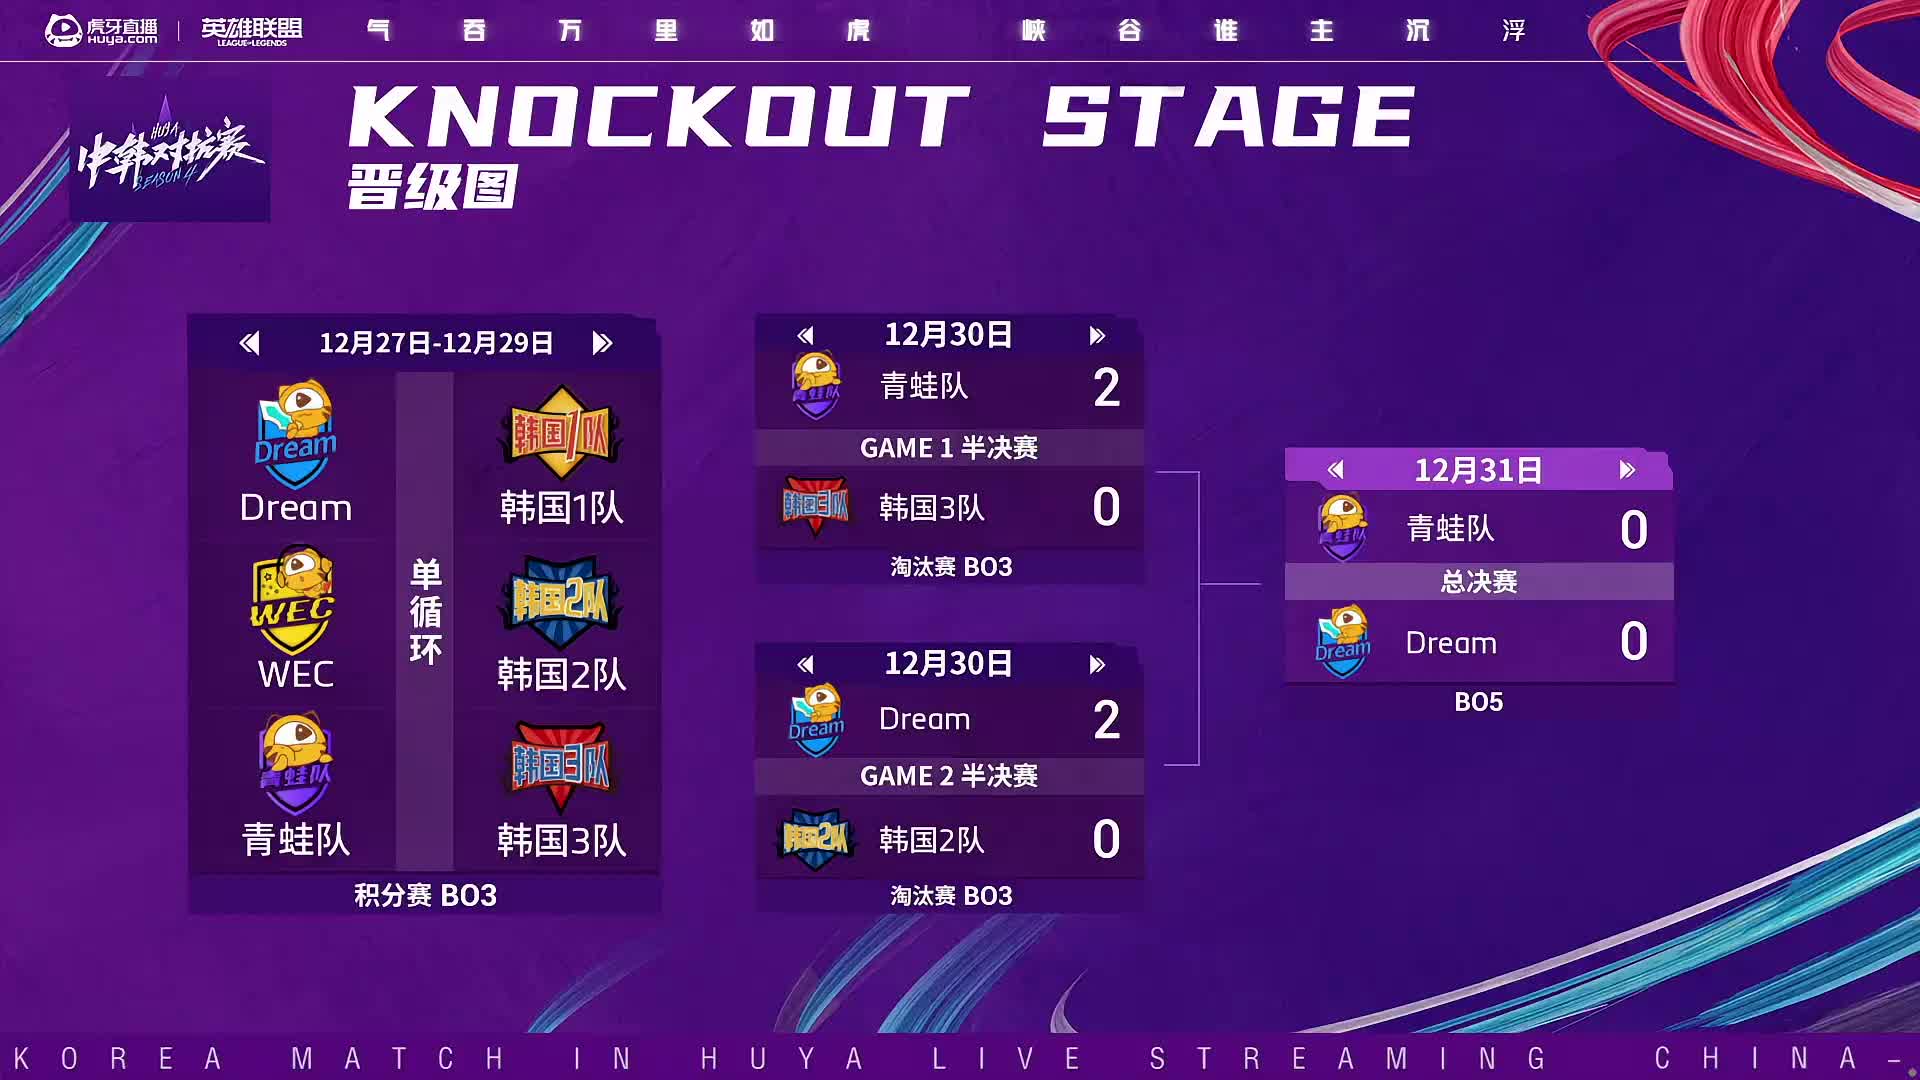 中韩对抗赛12.31 Dream 3:2青蛙队